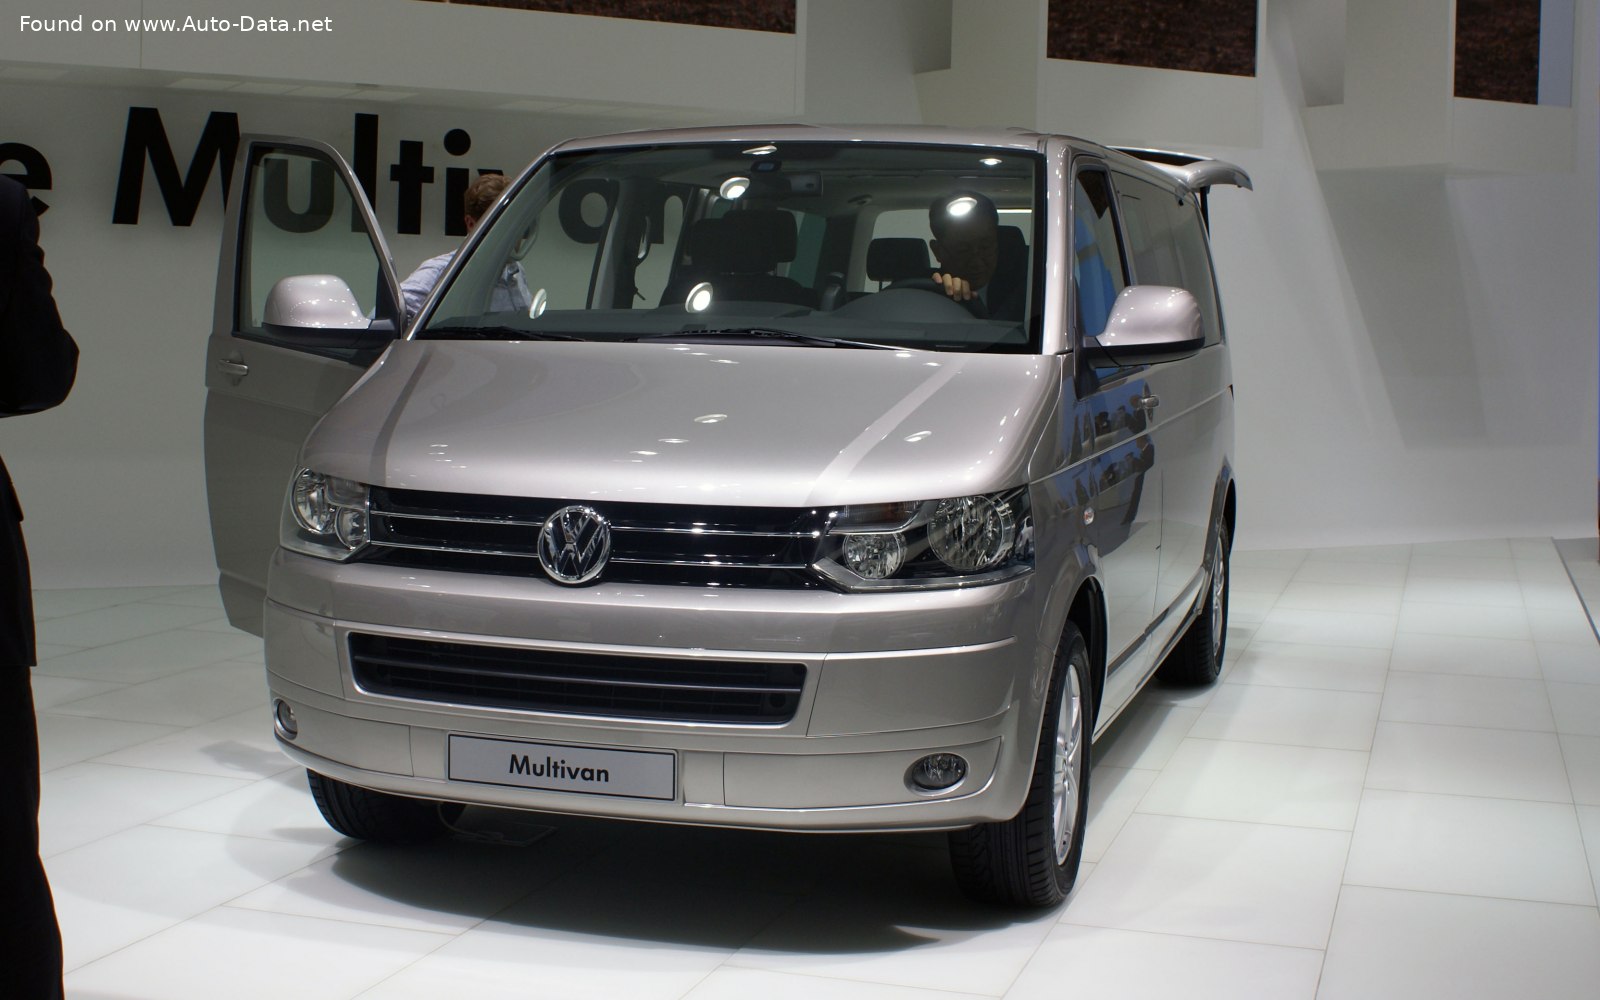 File:VW T5 Multivan front 20071002.jpg - Wikimedia Commons